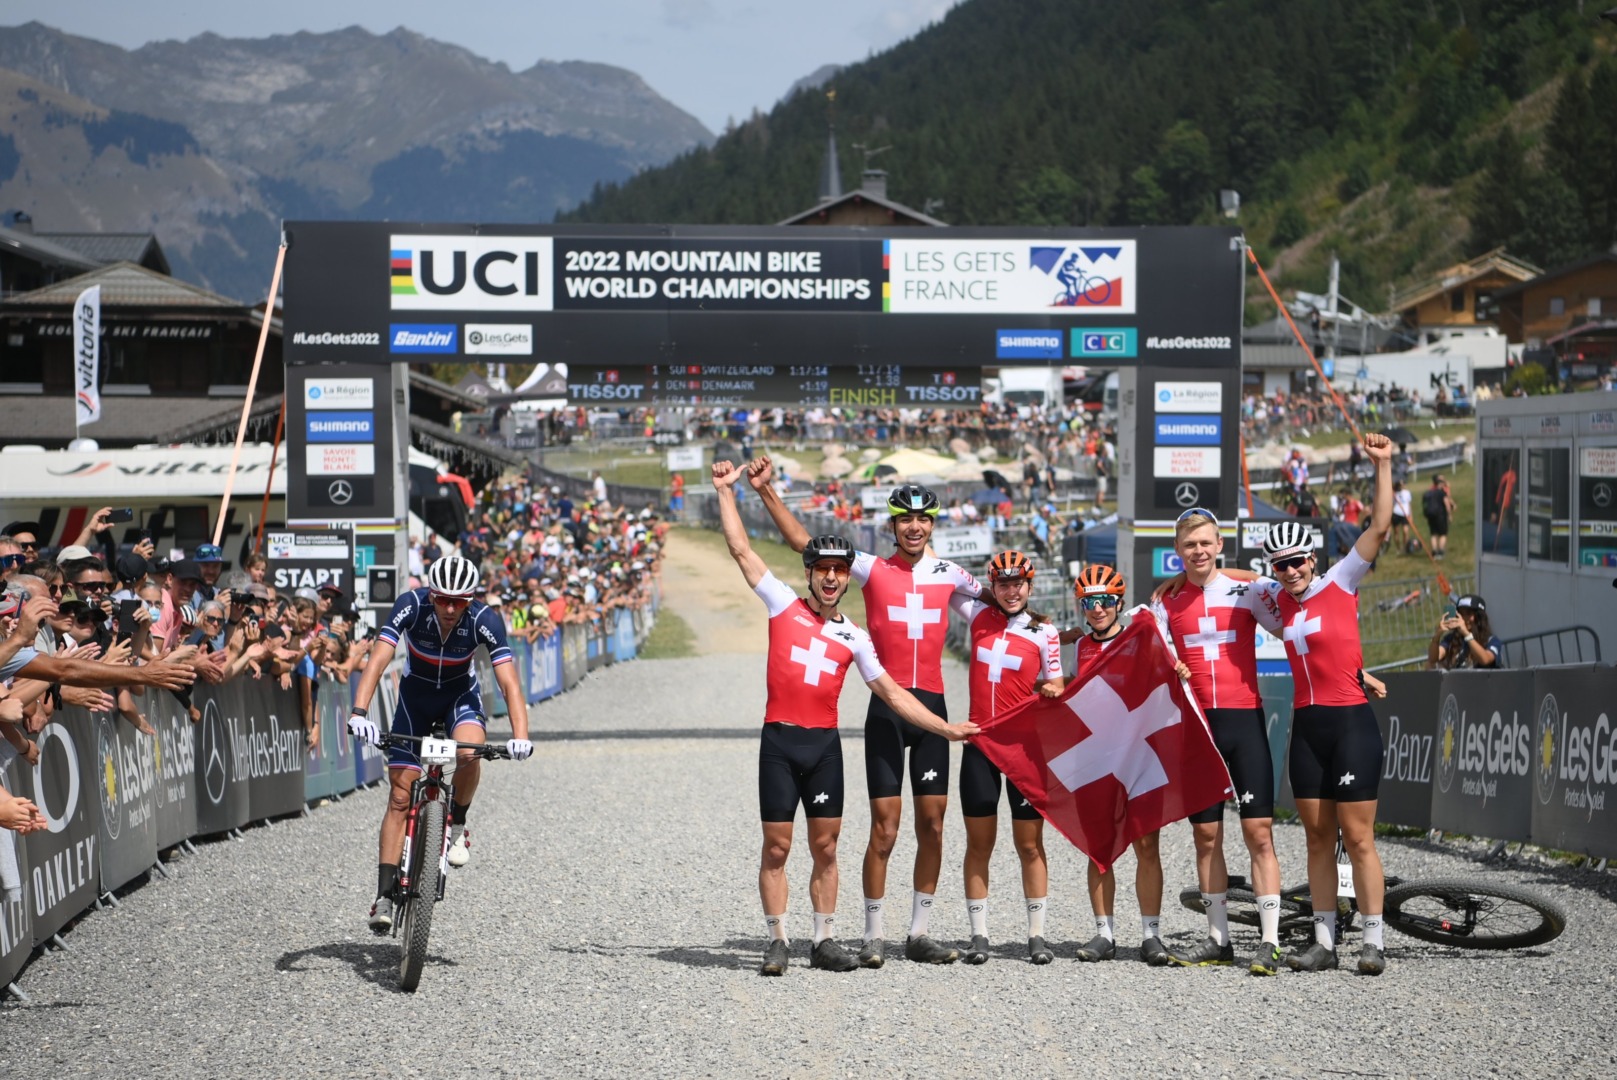 Szwajcarzy najlepszą drużyną. Polska na 15. miejscu | Mistrzostwa Świata w kolarstwie górskim – Les Gets, Francja